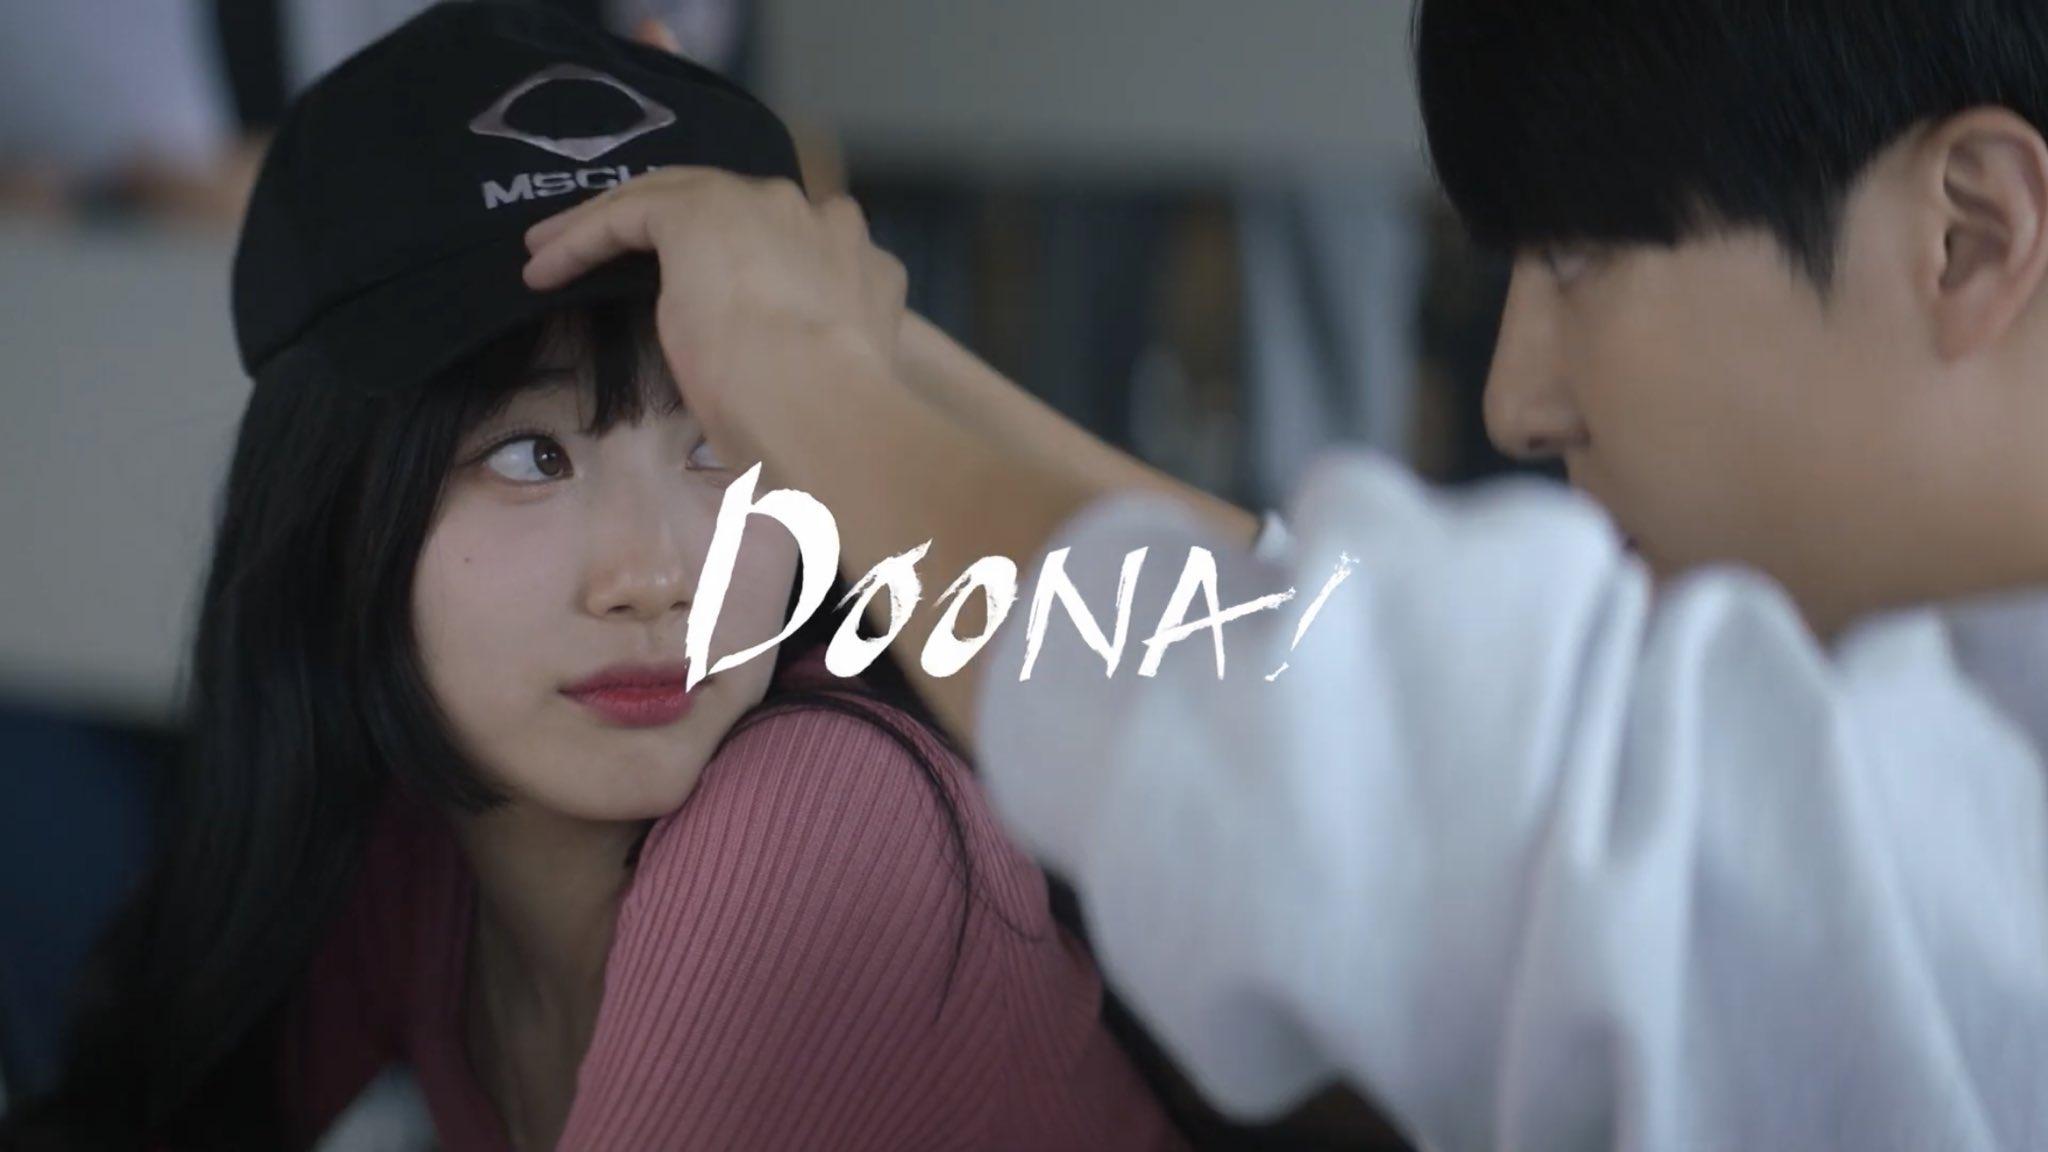 Hình ảnh trong video giới thiệu phim "Doona!" của NetFlix.